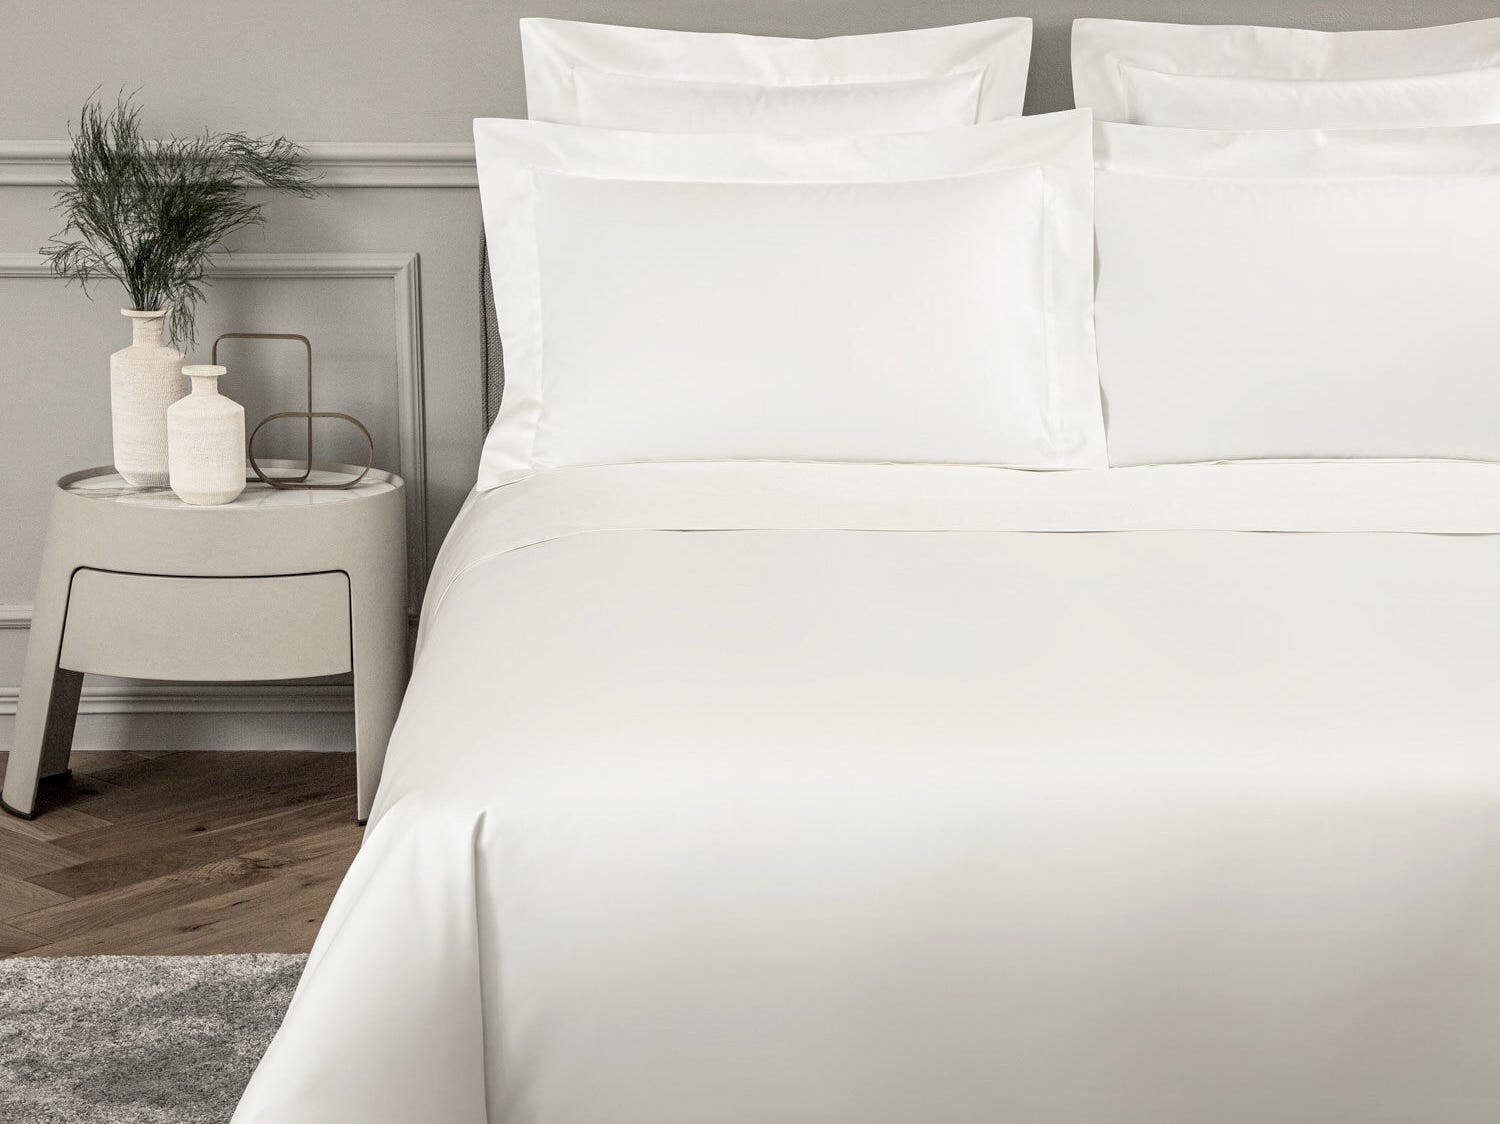 Ein Bett in einem Schlafzimmer ist mit einer weißen Bettdecke und Bettwäsche von Frette ausgestattet.